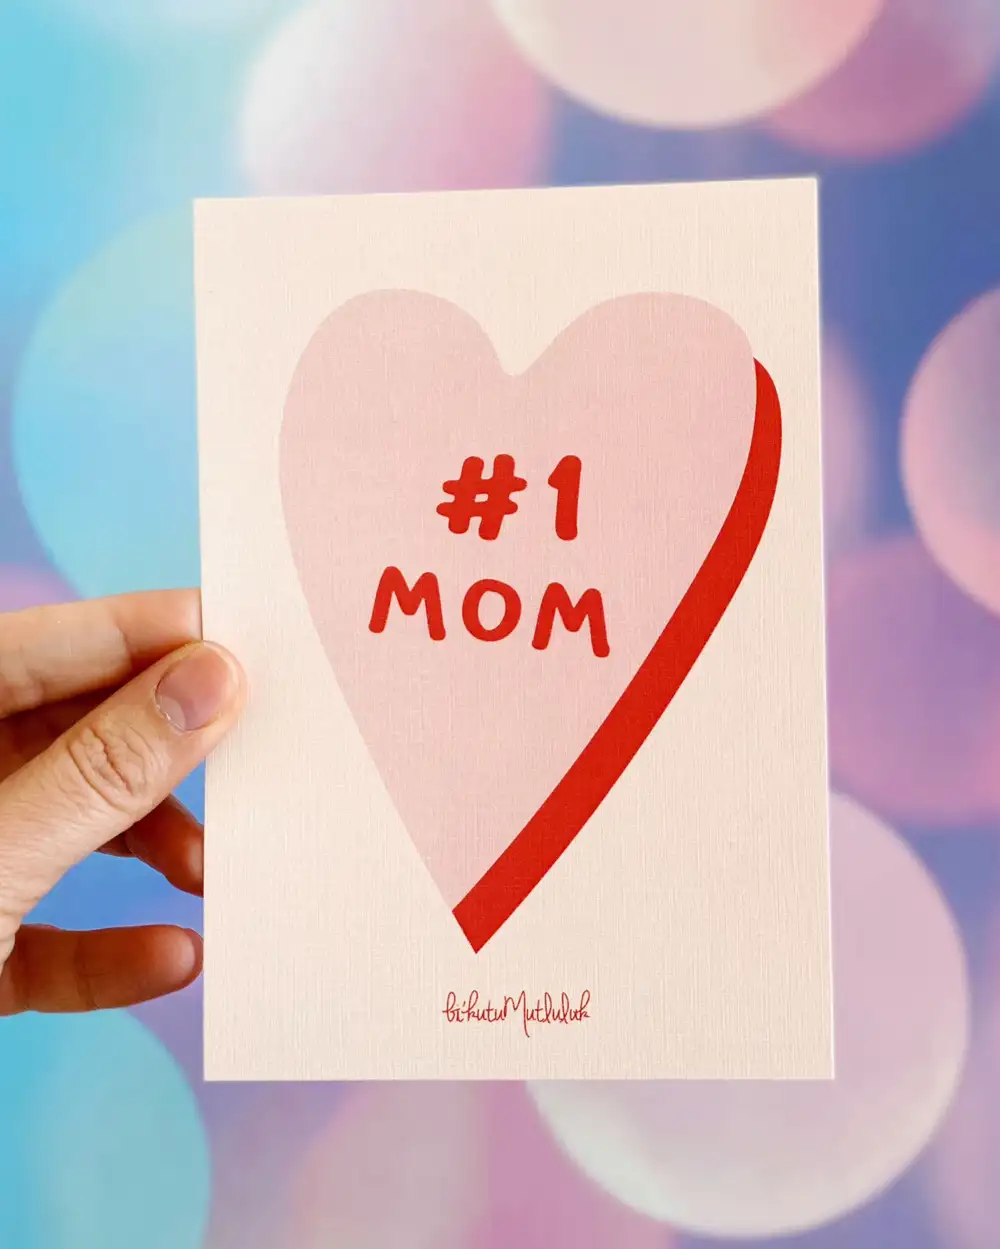 Anneye Sözler Kısa Notlar Hediye Kartı - Kalbimin Birincisi